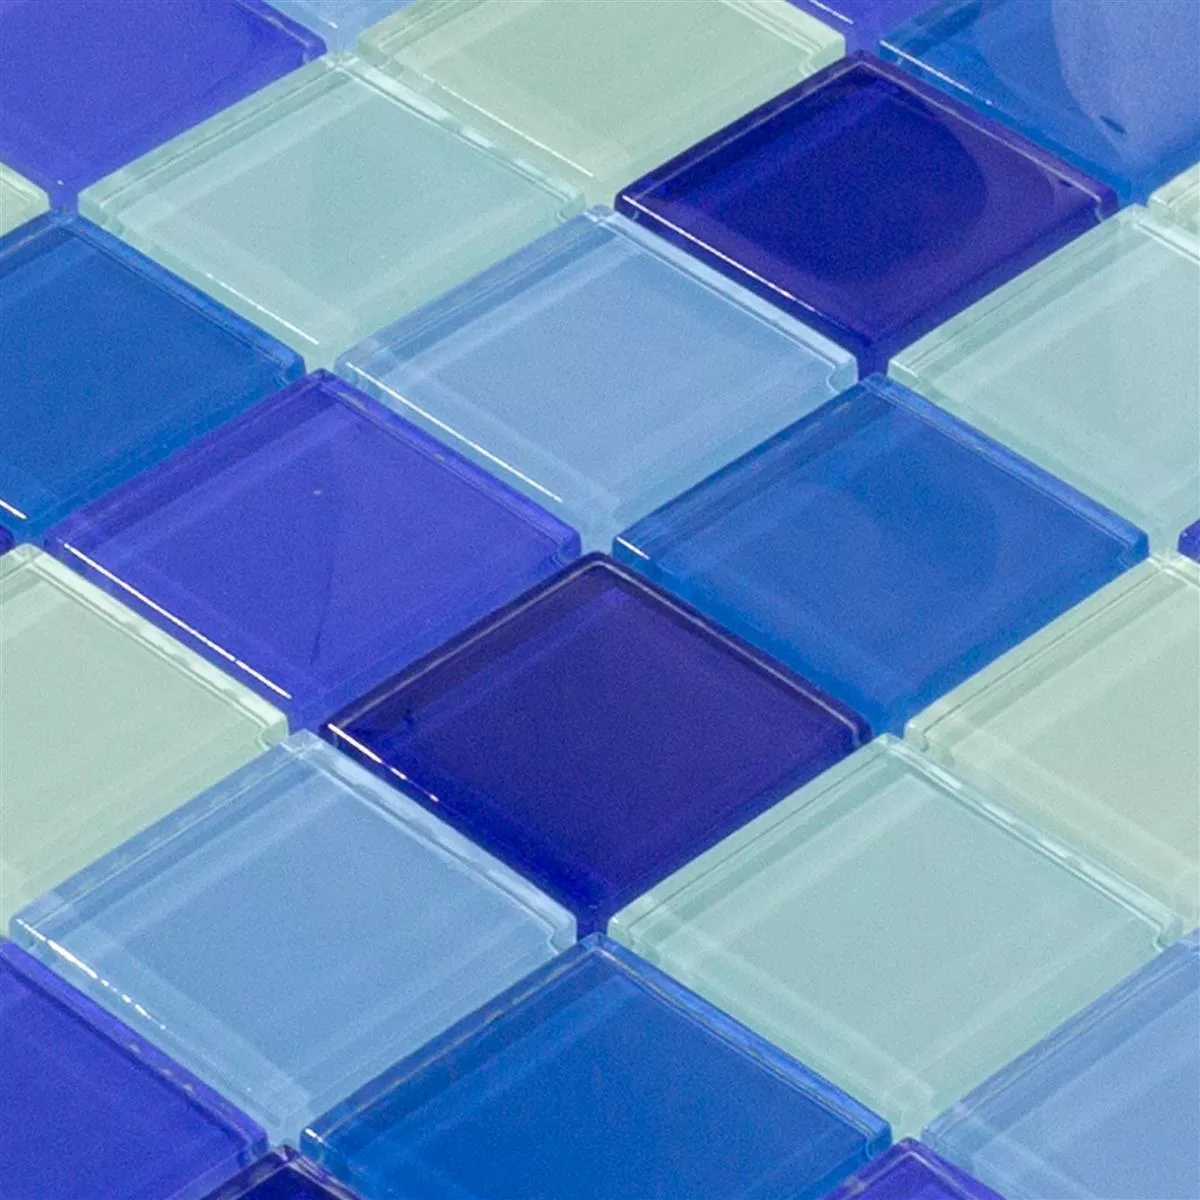 Mozaiki Szklana Płytki Glasgow Niebieski Mix